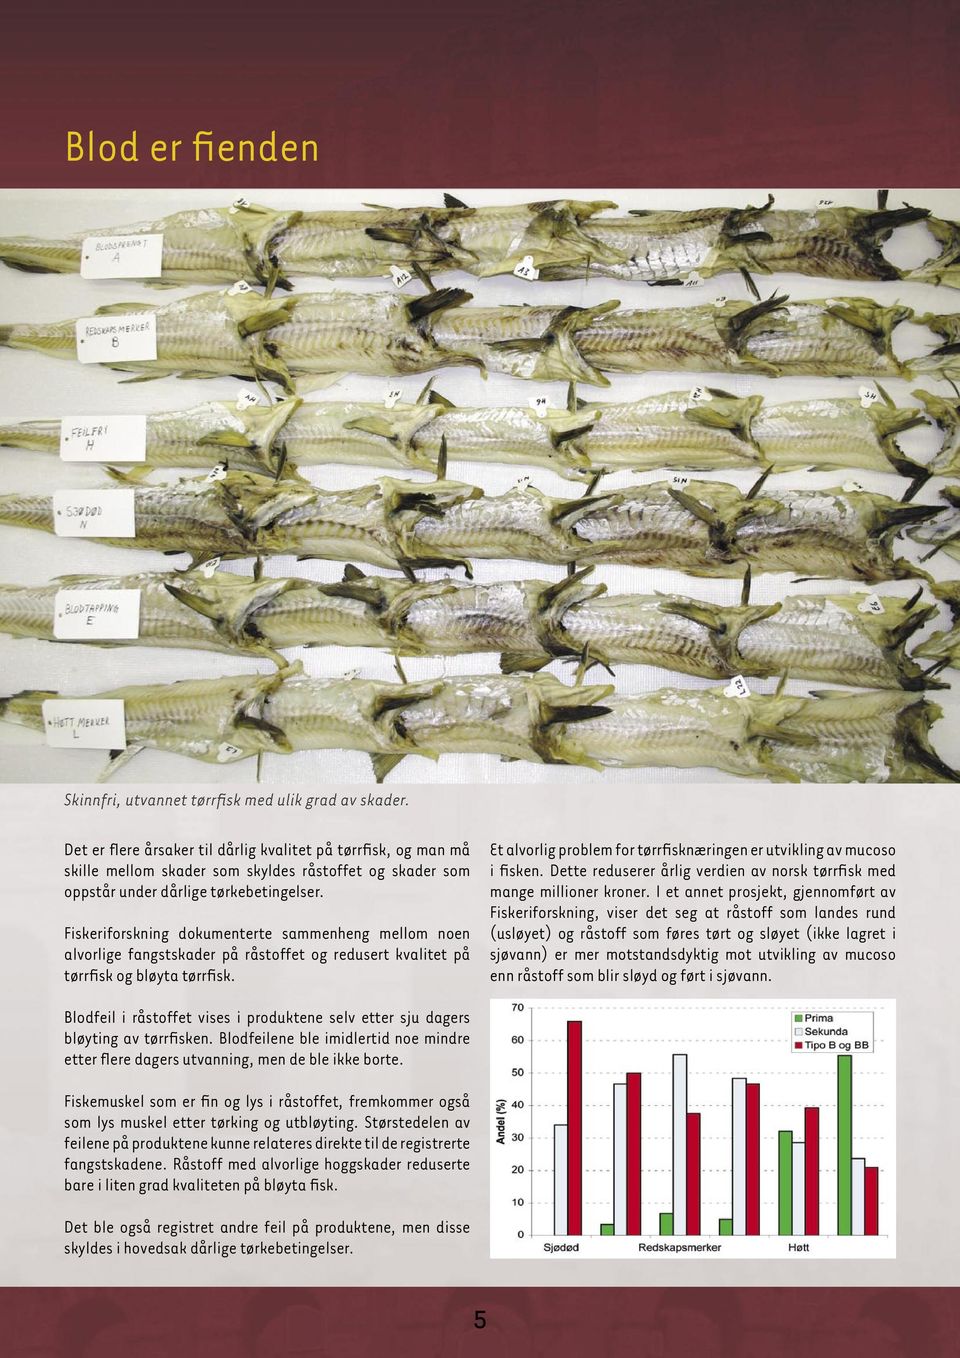 Fiskeriforskning dokumenterte sammenheng mellom noen alvorlige fangstskader på råstoffet og redusert kvalitet på tørrfisk og bløyta tørrfisk.